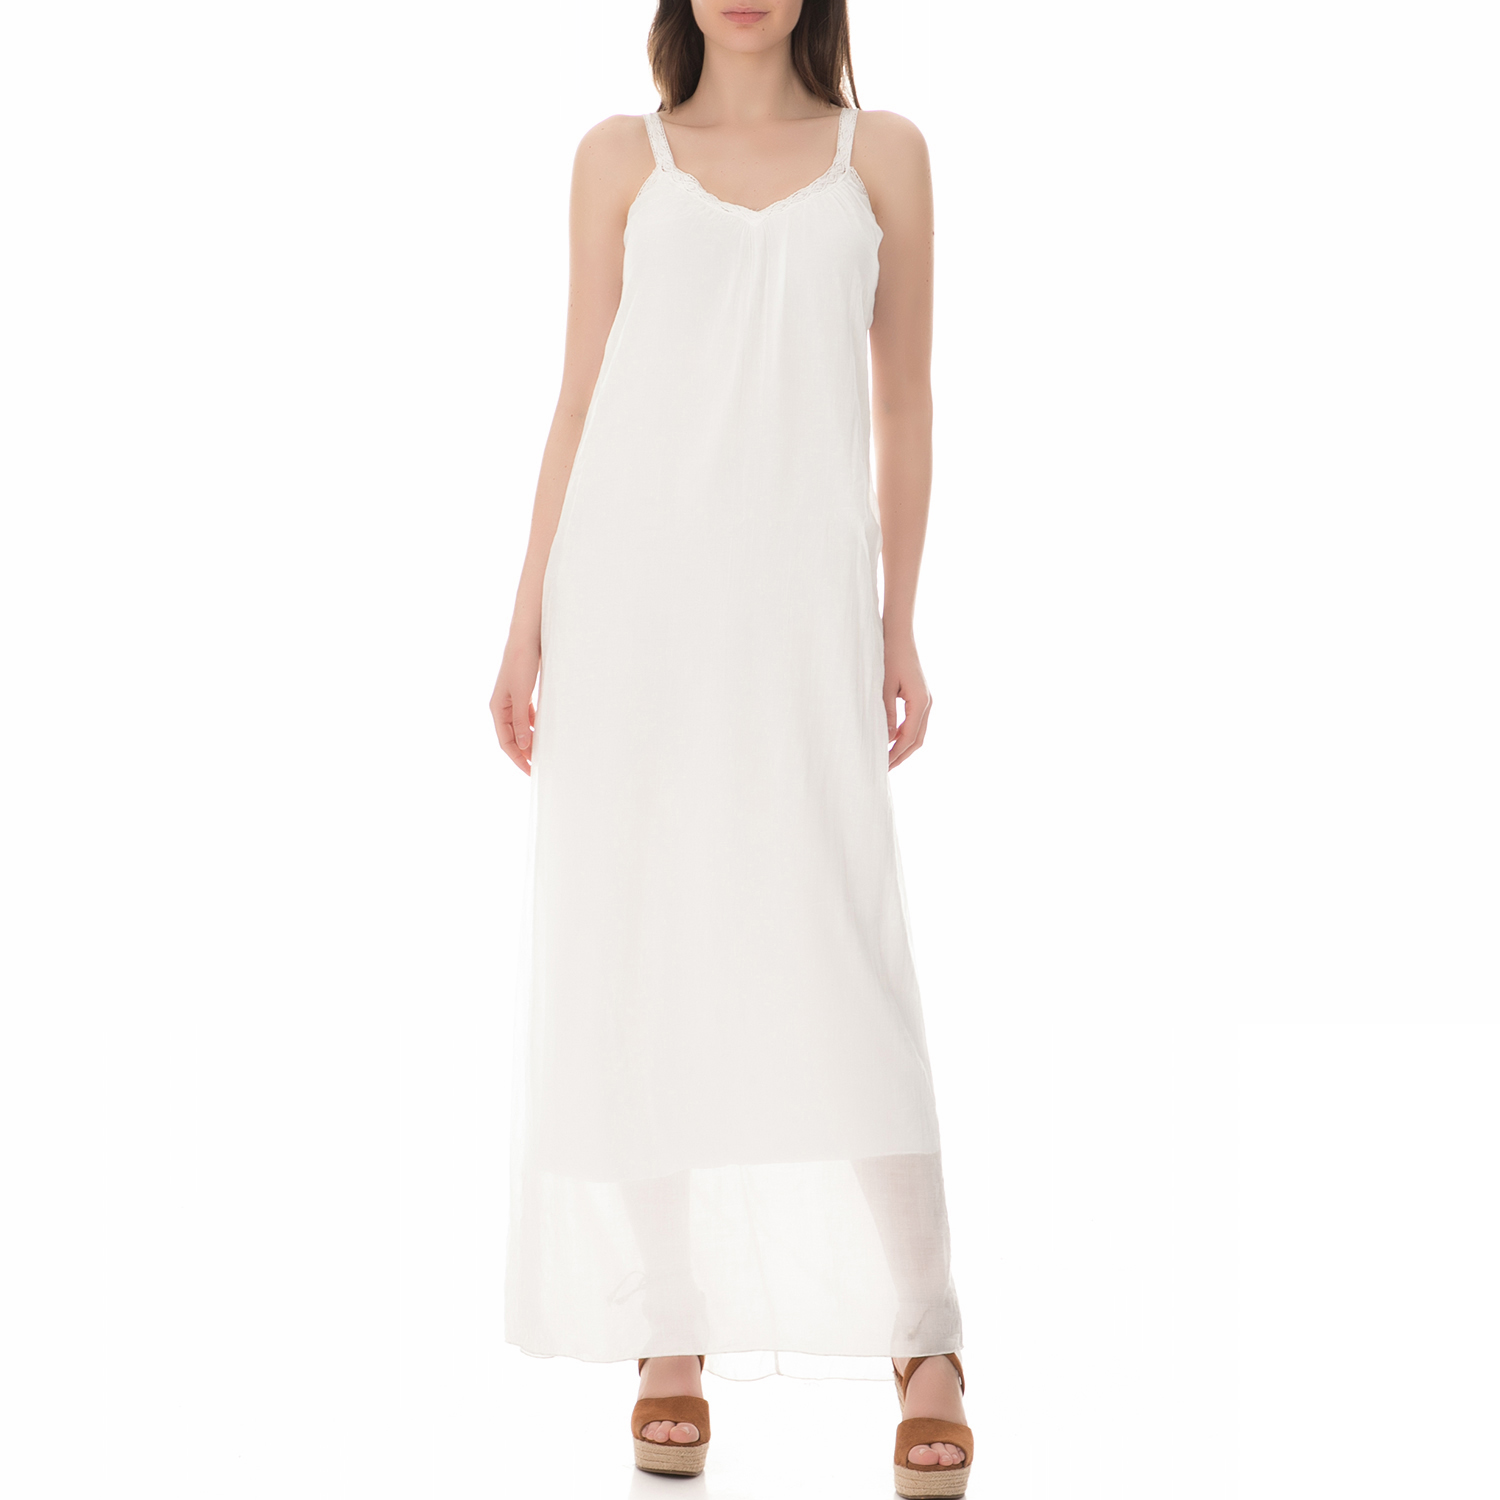 Γυναικεία/Ρούχα/Φορέματα/Μάξι BRAEZ - Γυναικείο μάξι φόρεμα BRAEZ λευκό